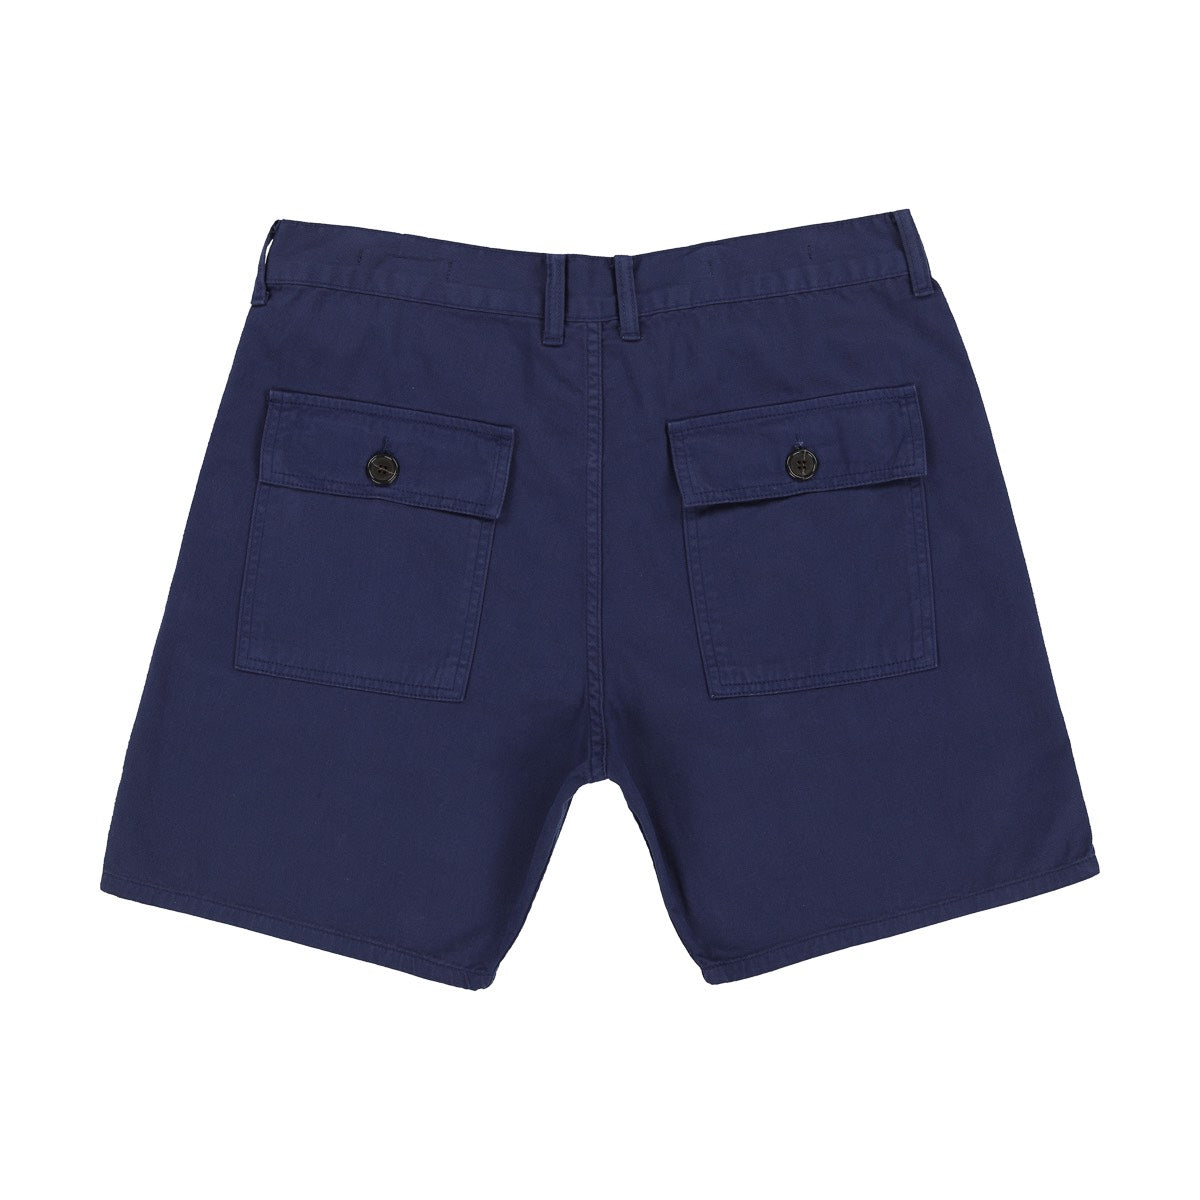 Trestles Shorts - Navy